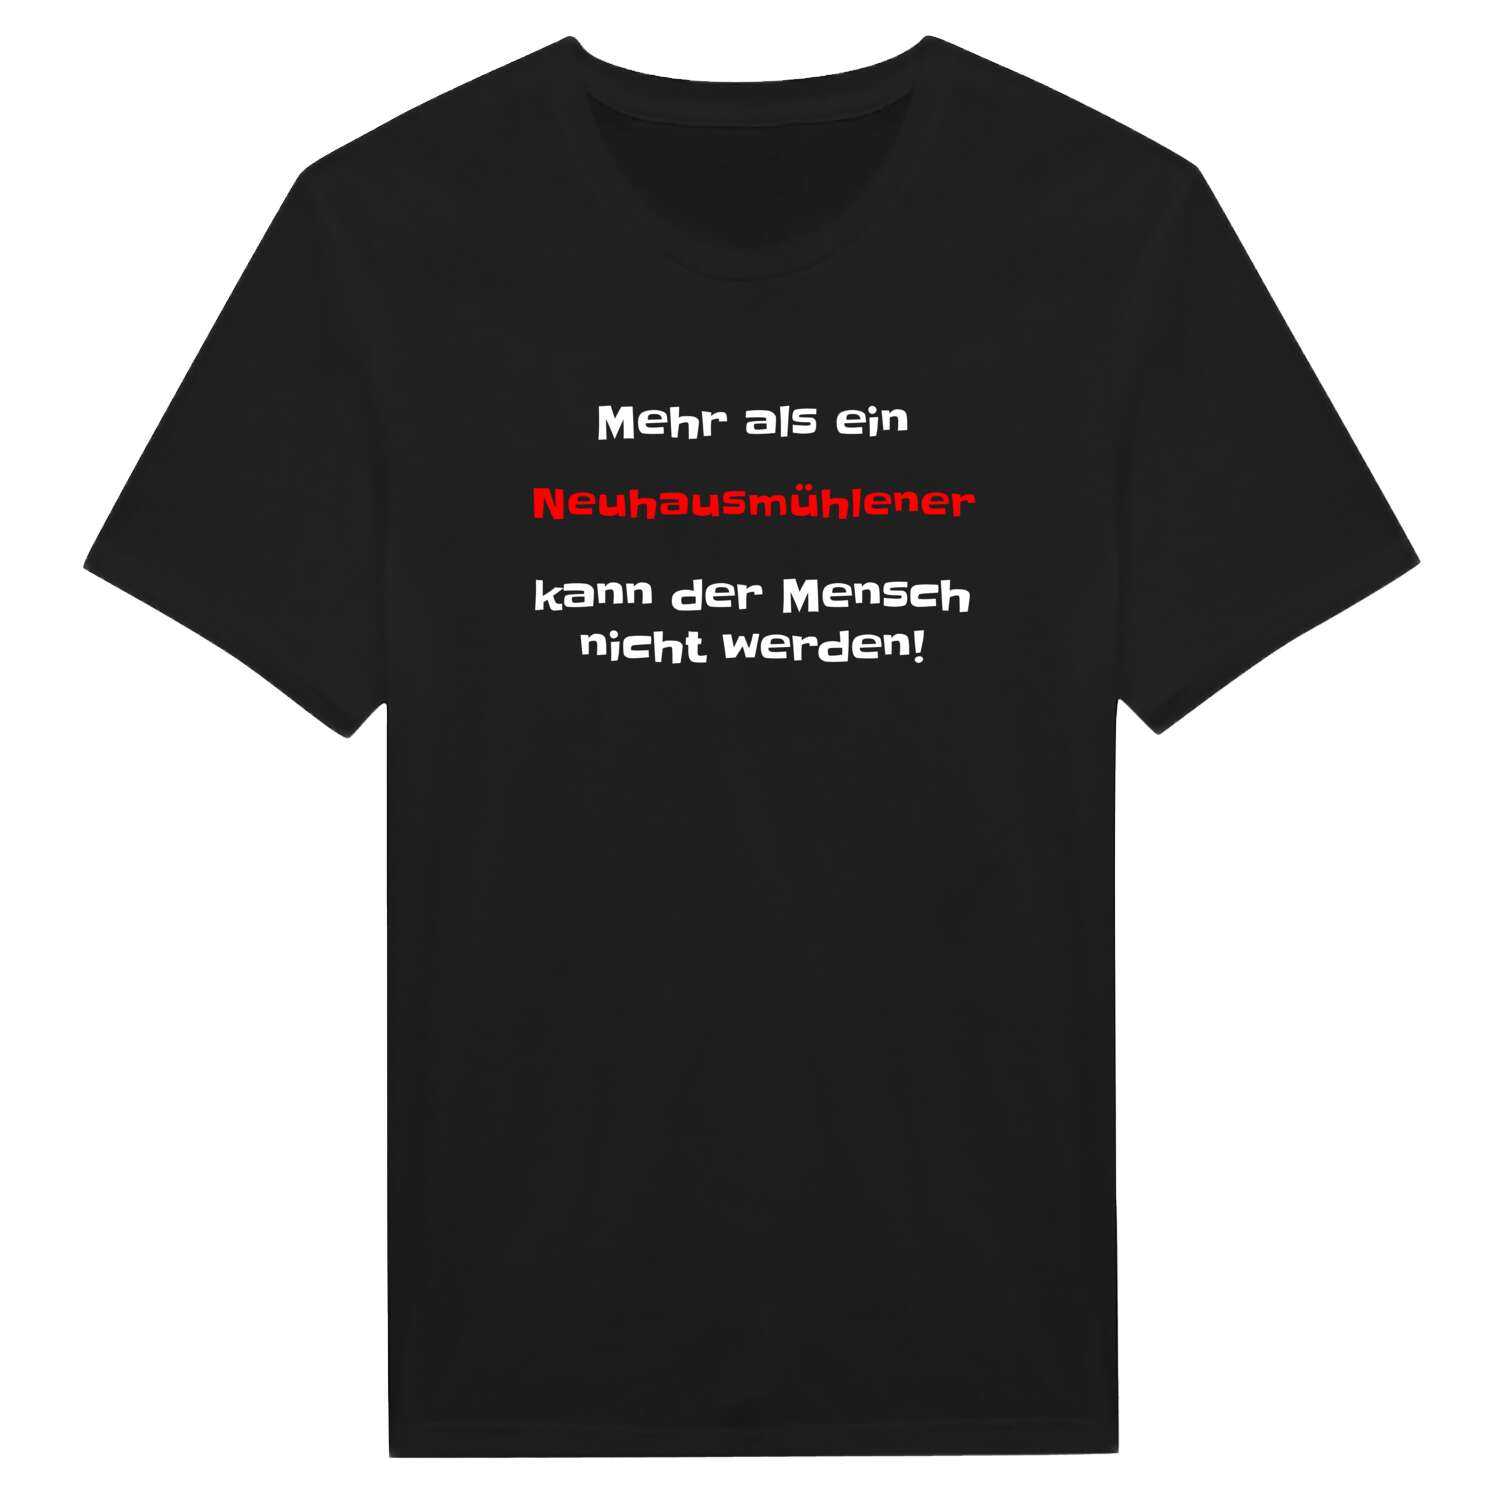 Neuhausmühle T-Shirt »Mehr als ein«